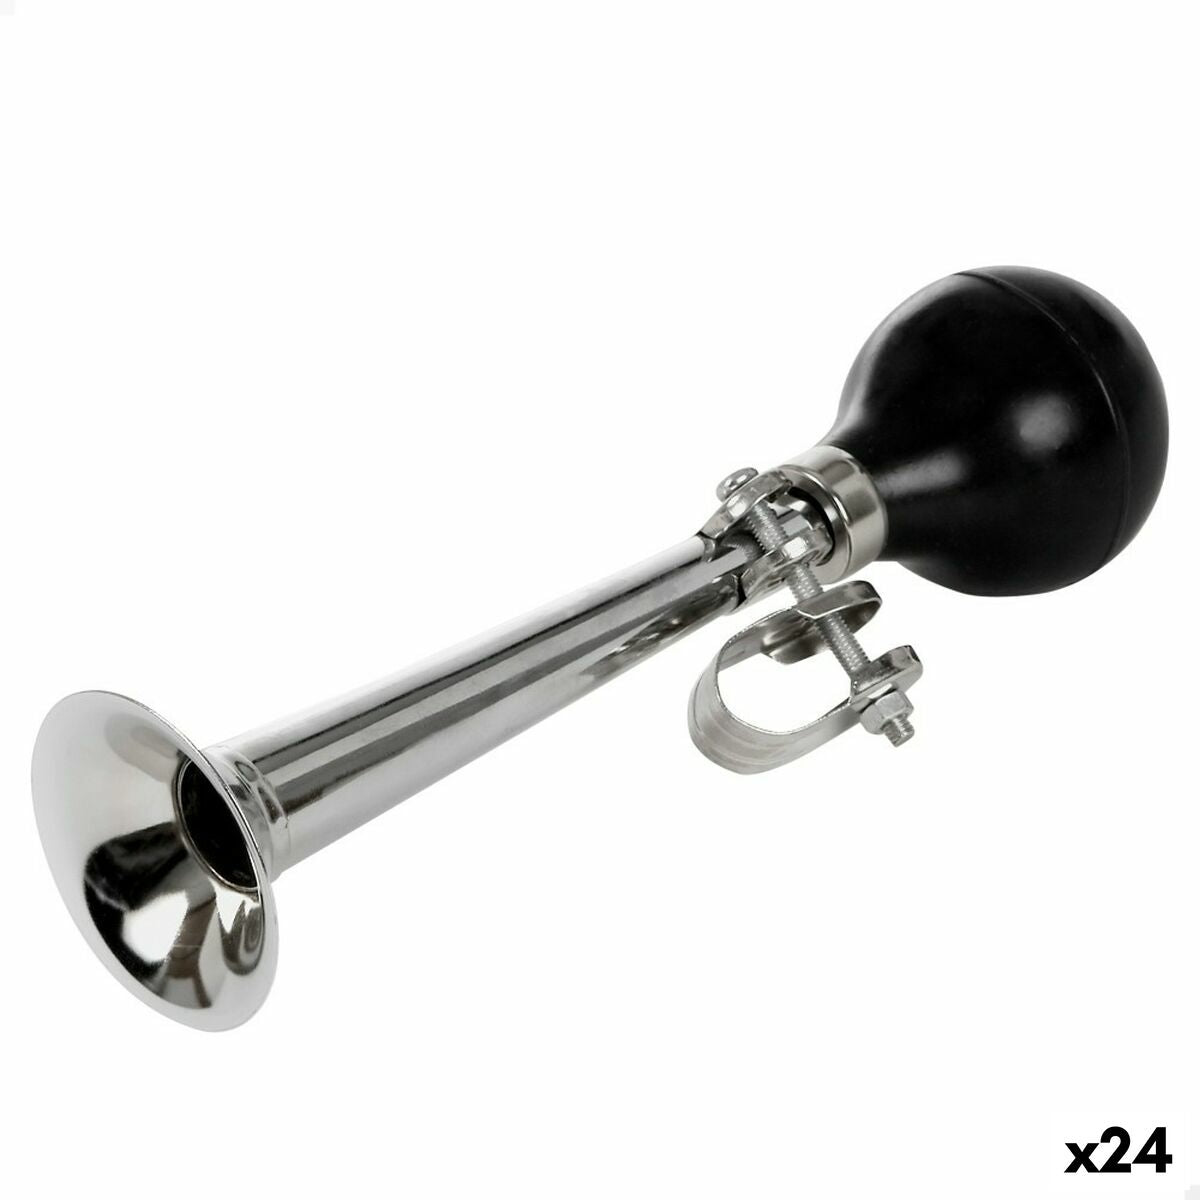 Horn Aktive 6 x 6 x 20 cm Cykel (24 enheder)